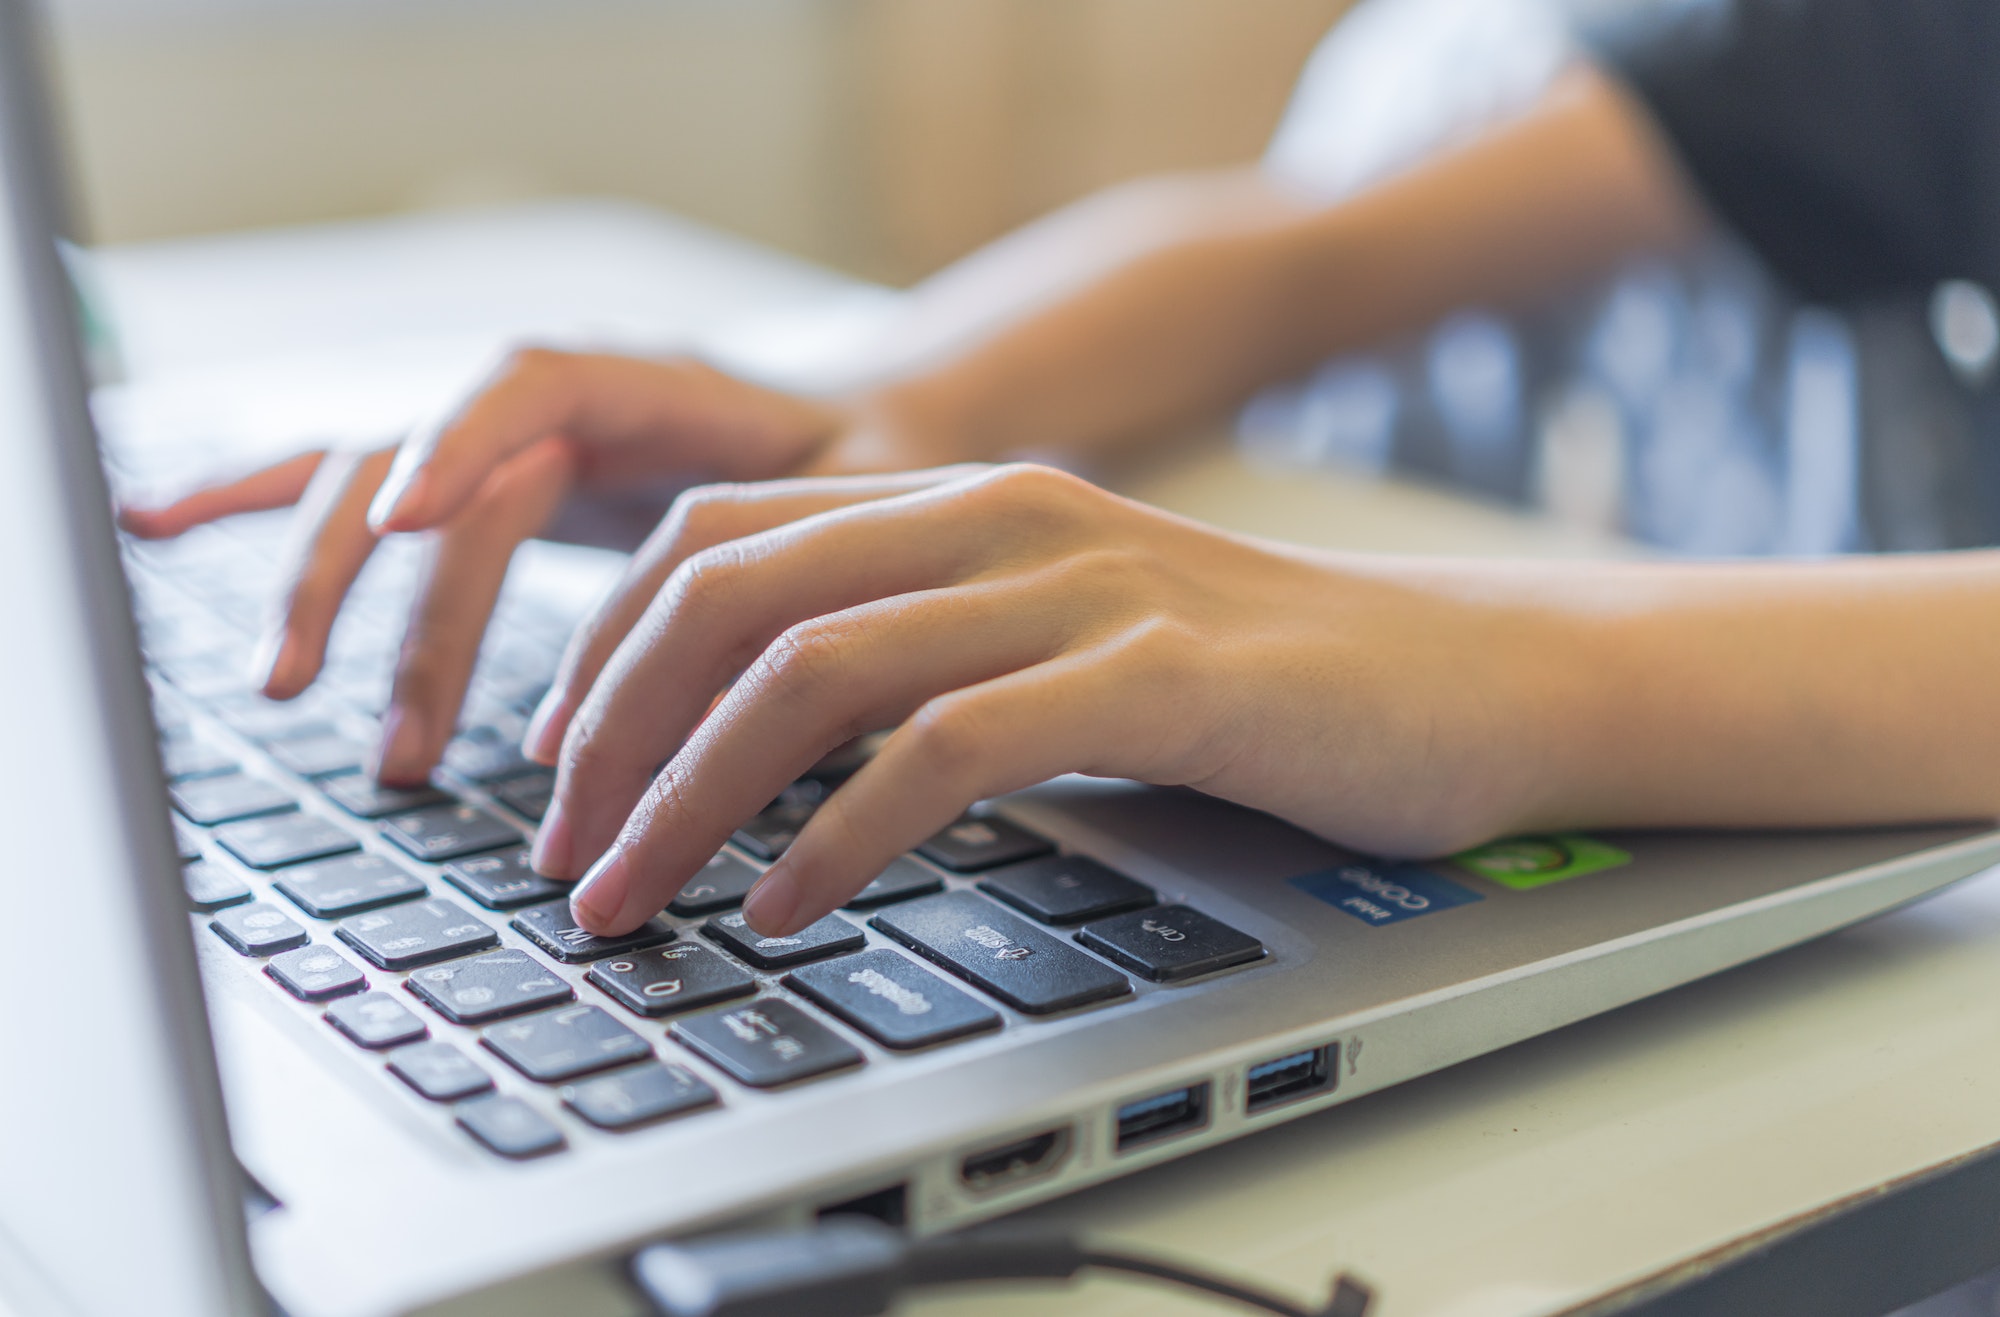 Girl hand typing on keyboard laptop